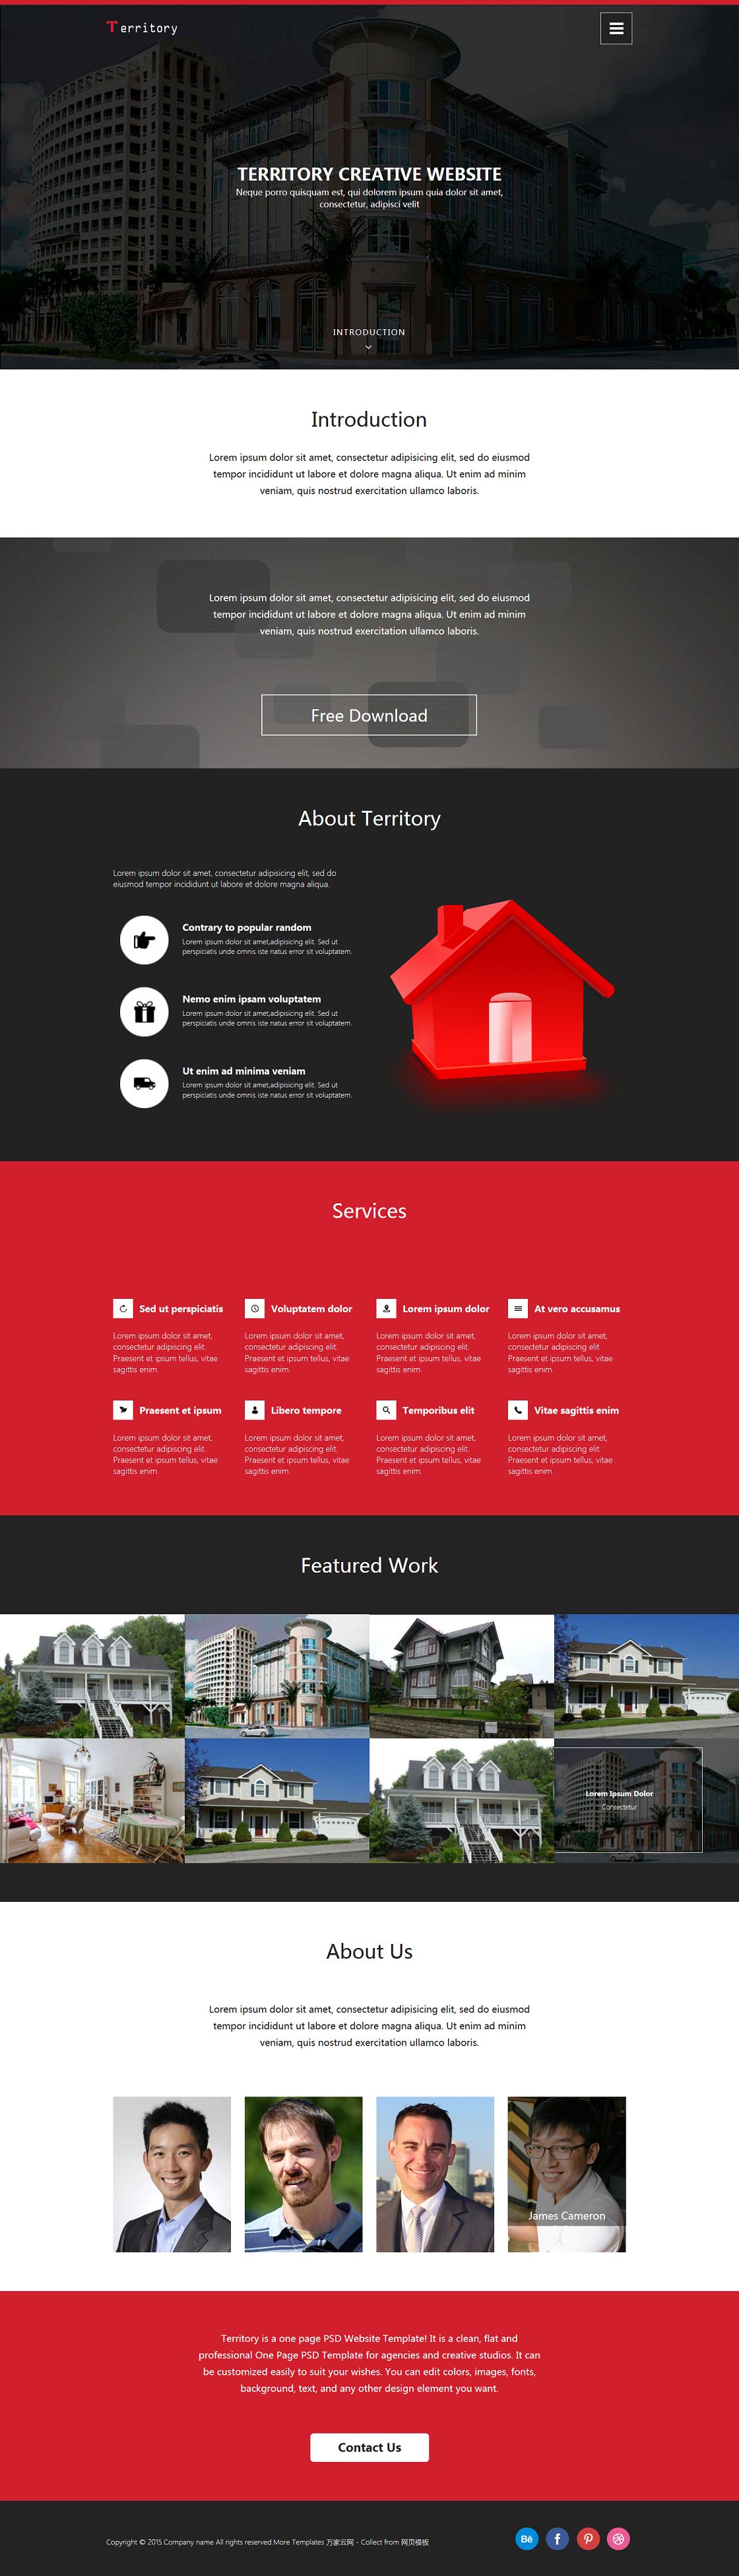 别墅建筑工程设计公司企业网站模板